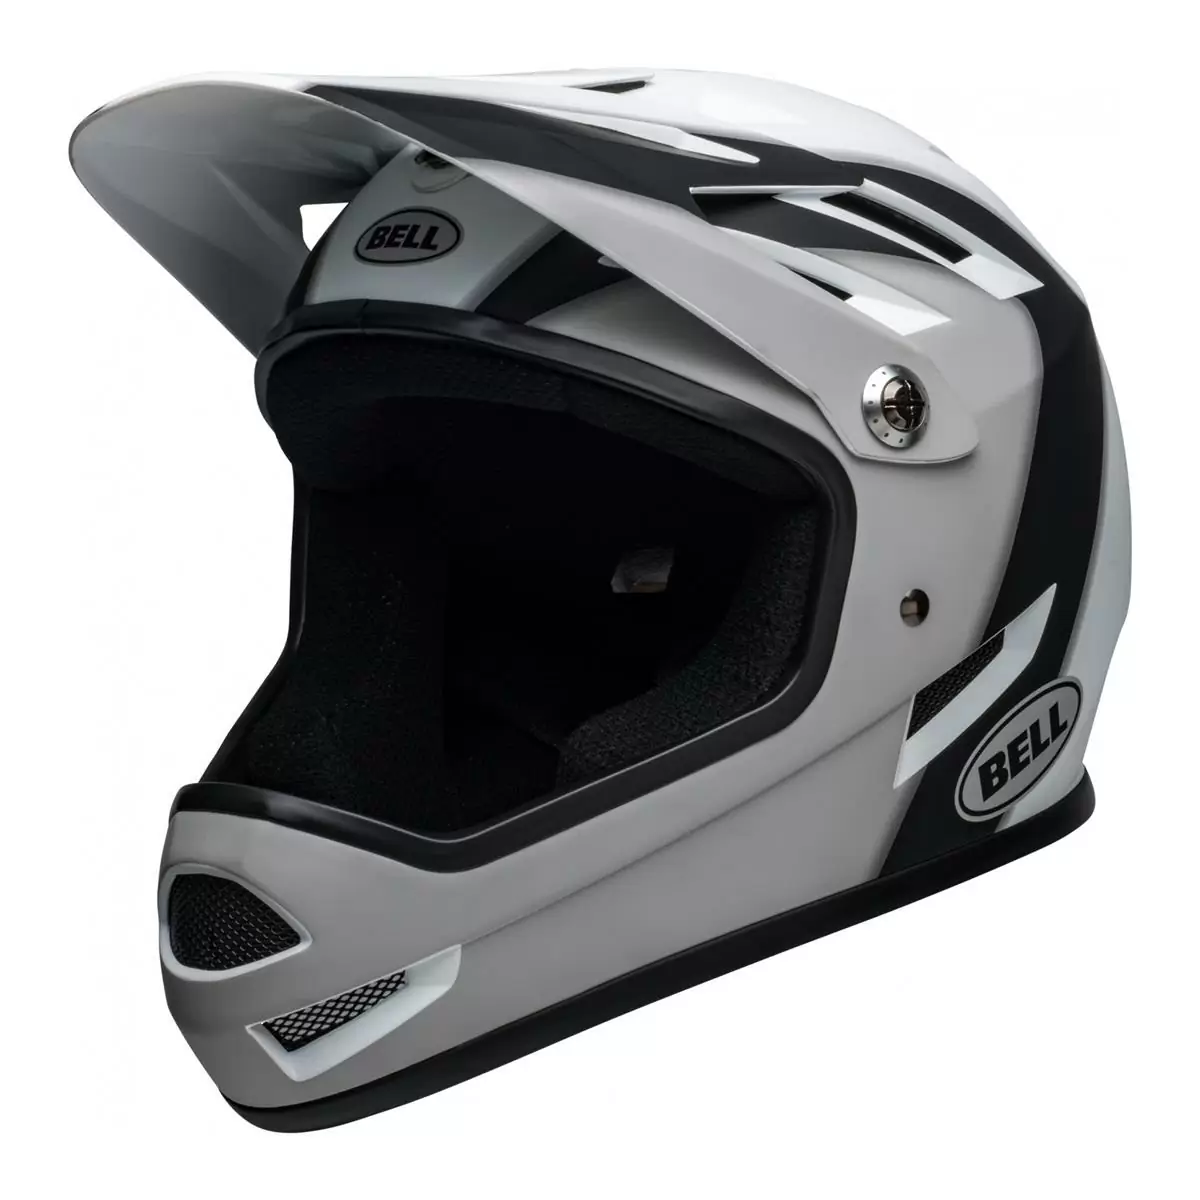 Sanction Full Face Helmet Black/White Size M (55-57cm) - image